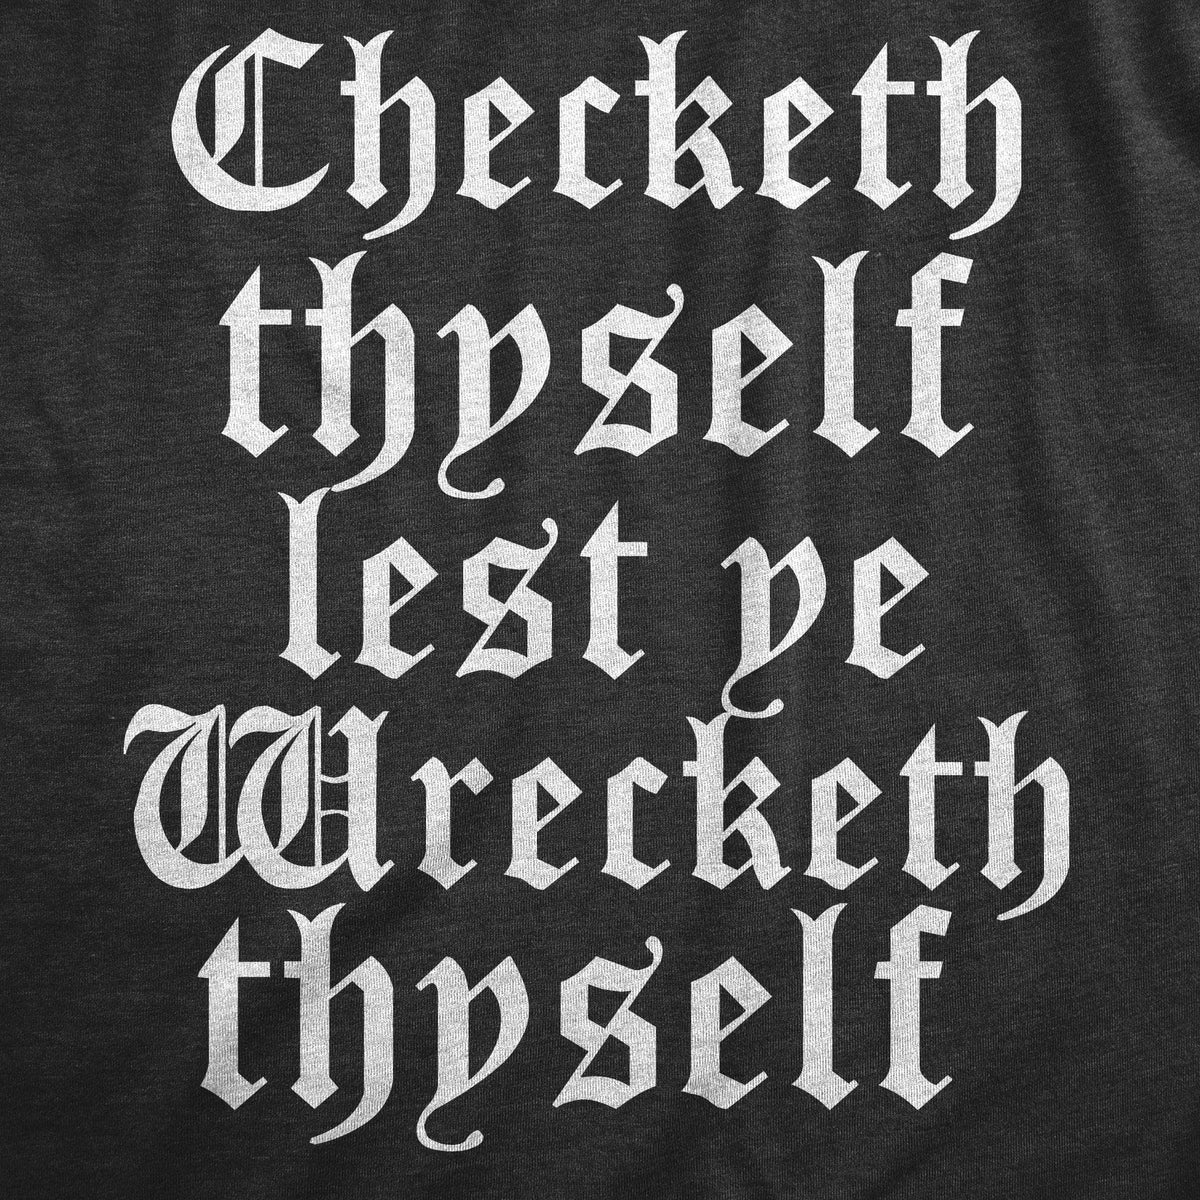 Checketh Thyself Lest Ye Wrecketh Thyself Men&#39;s Tshirt  -  Crazy Dog T-Shirts